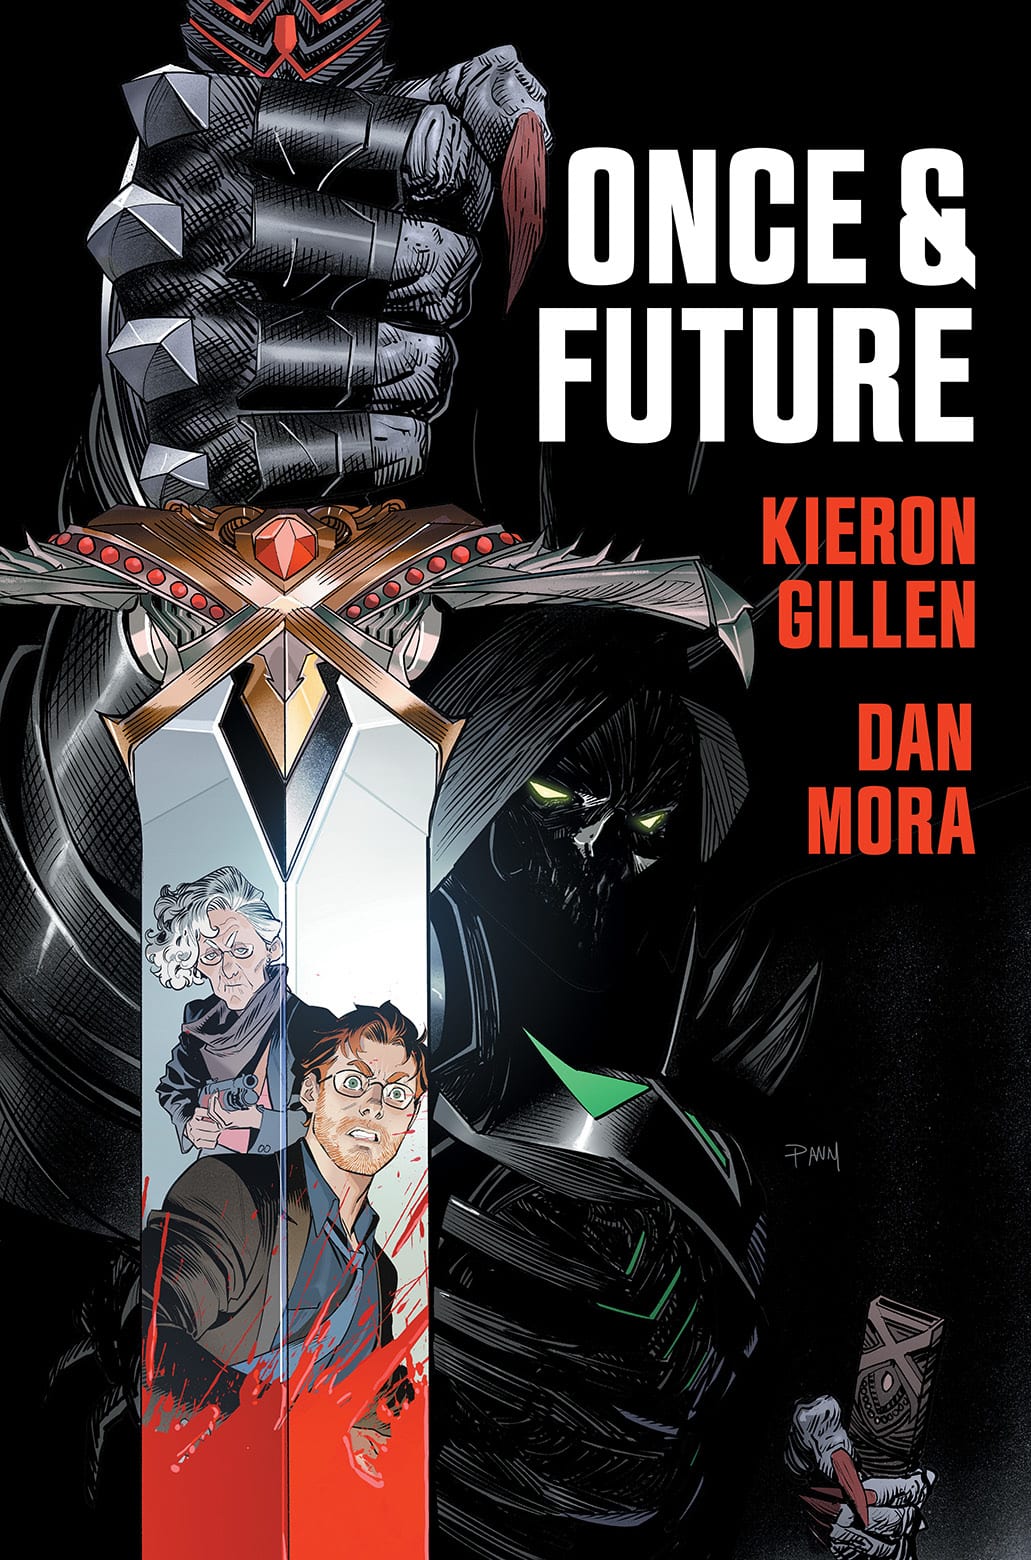 ¡Auge!  anuncia Once and Future de Keiron Gillen y Dan Mora